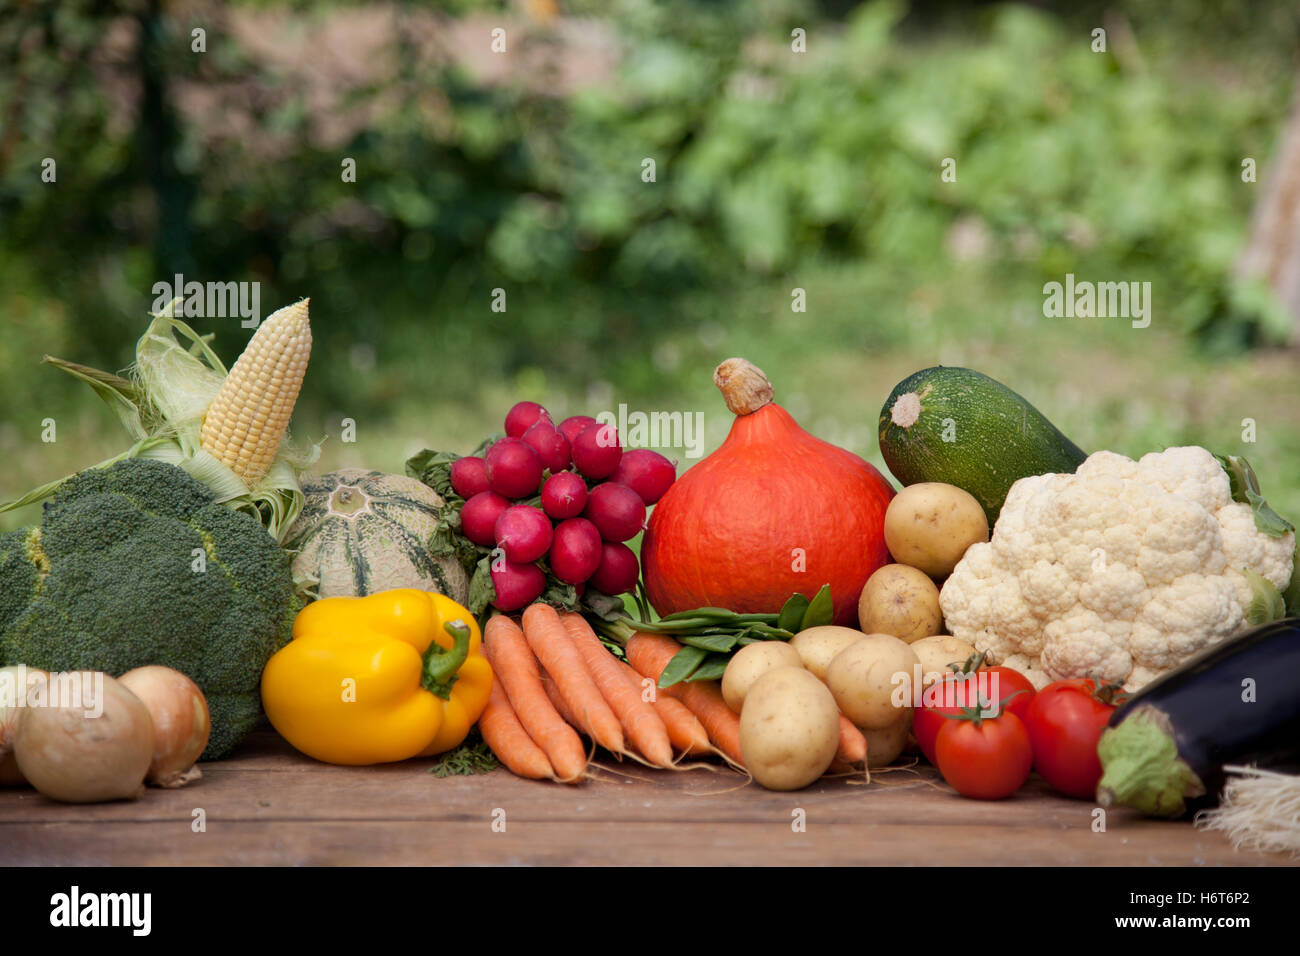 La nourriture, aliment, santé, nourrir, eco, jardin, de l'agriculture, de l'agriculture, de la fraîcheur, Banque D'Images